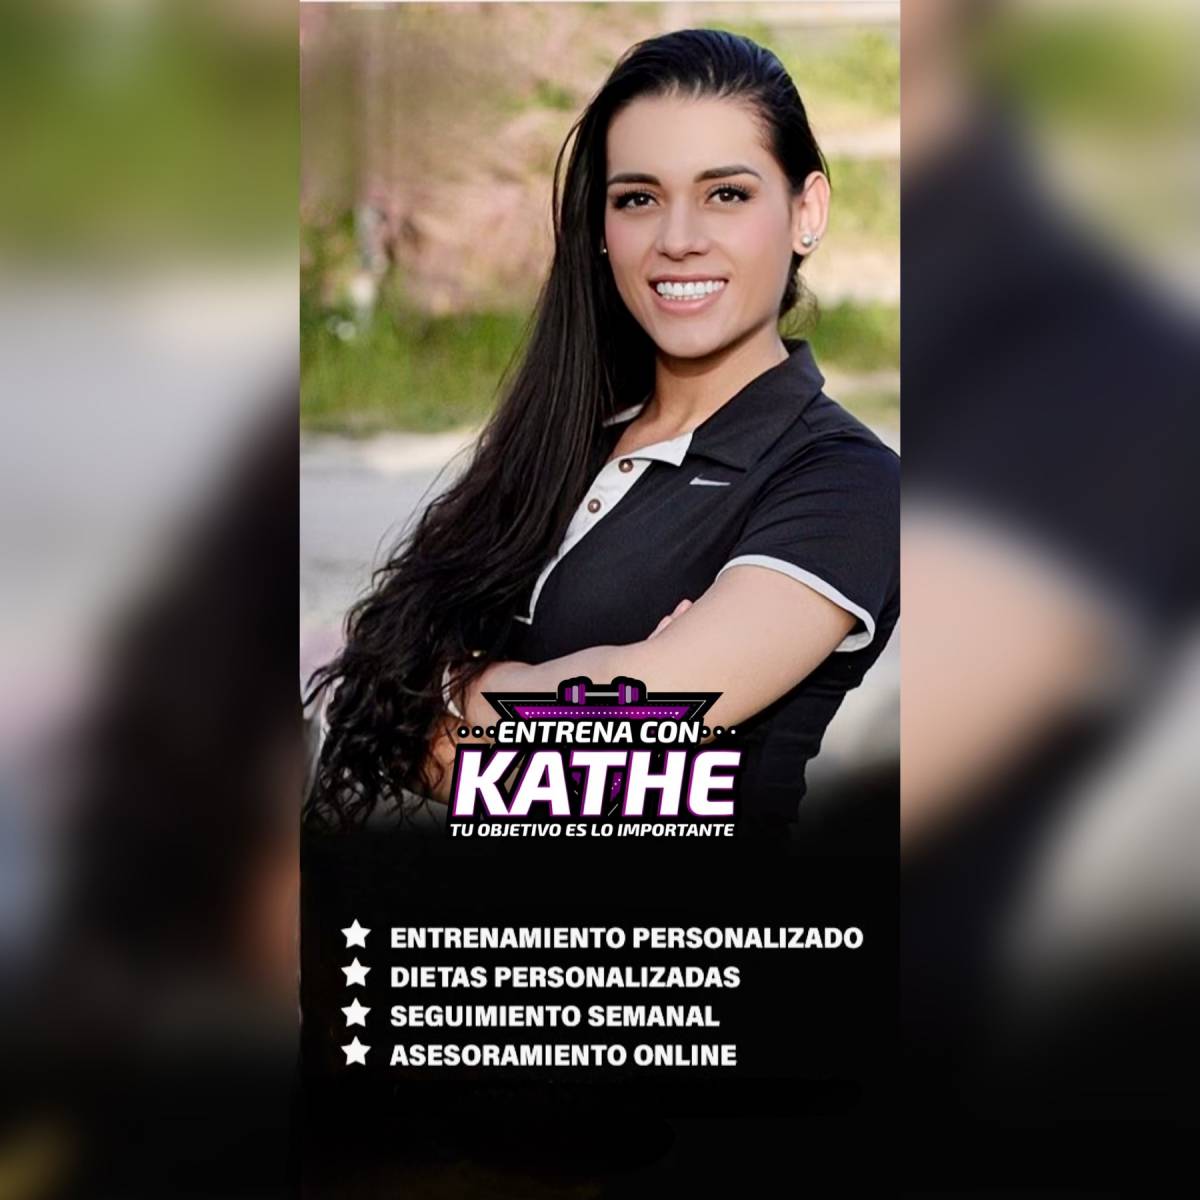 ENTRENA CON KATHE - Rivas-Vaciamadrid - Tai Chi